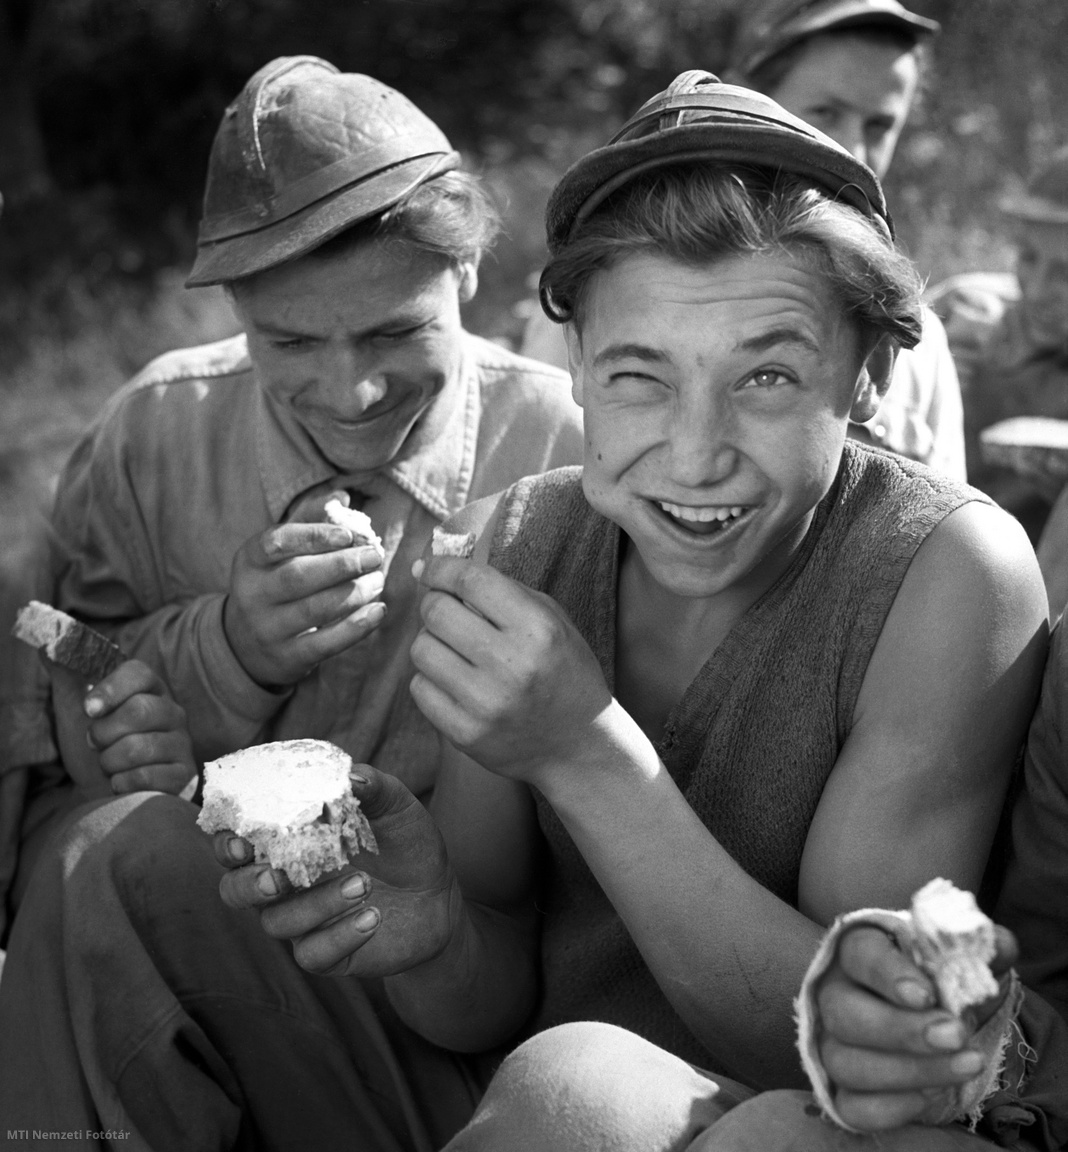 Sajószentpéter, 1951. július 1. A Munkaerő-tartalékok Hivatala (MTH) bányászati szakmunkásképző iskolájának vájártanulói reggeliznek a napfényben. A képriport a Munkaerő-tartalék Hivatal megrendelésére készült